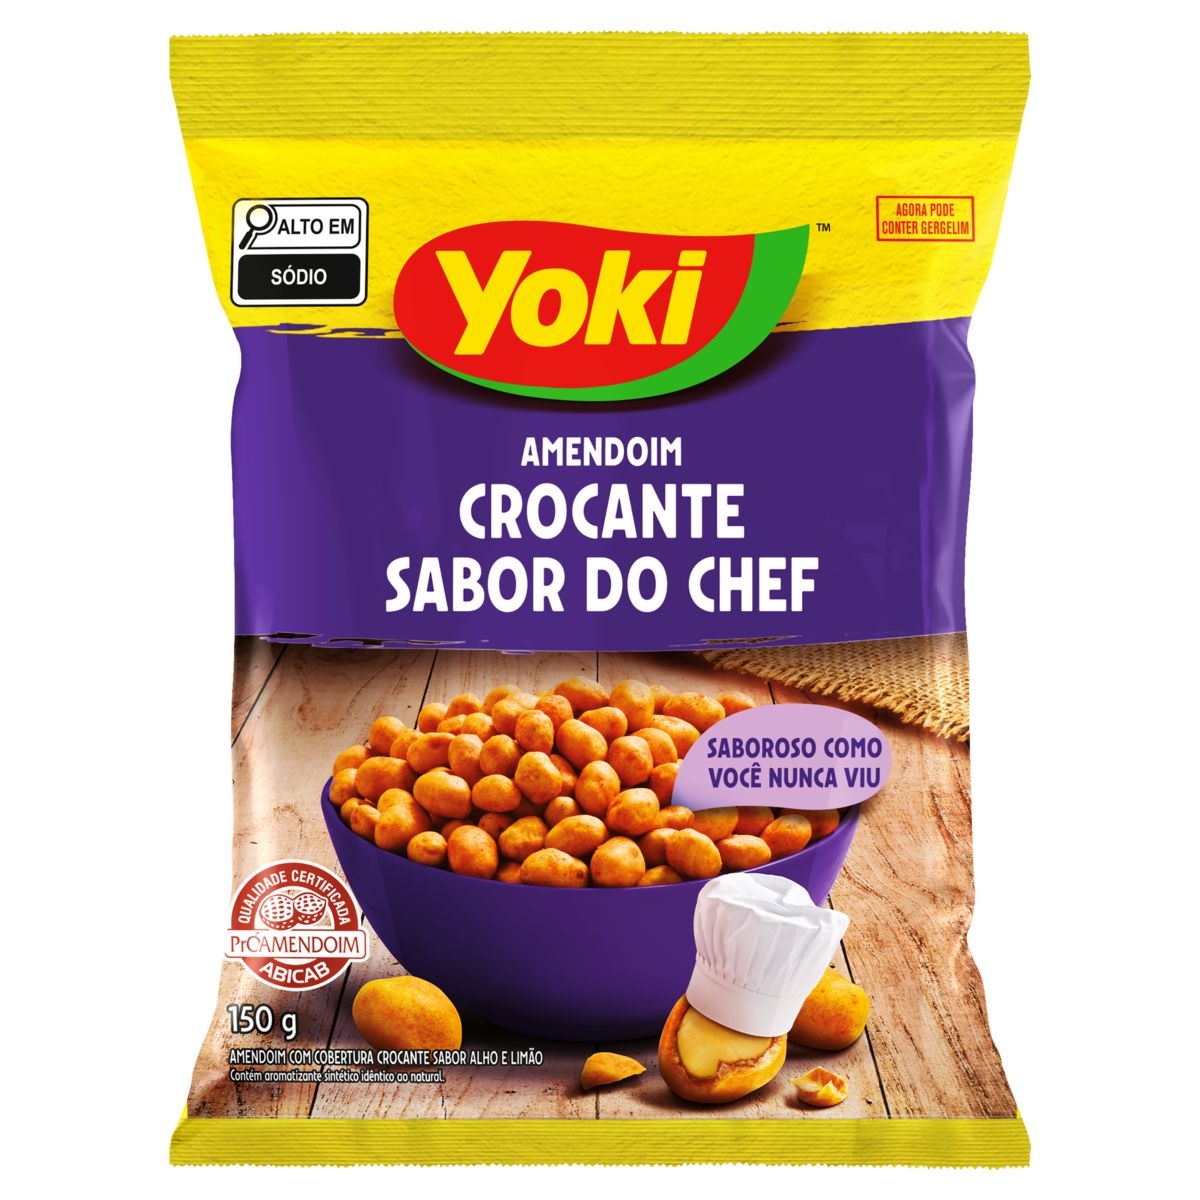 Amendoim Crocante Yoki Sabor do Chef 150g